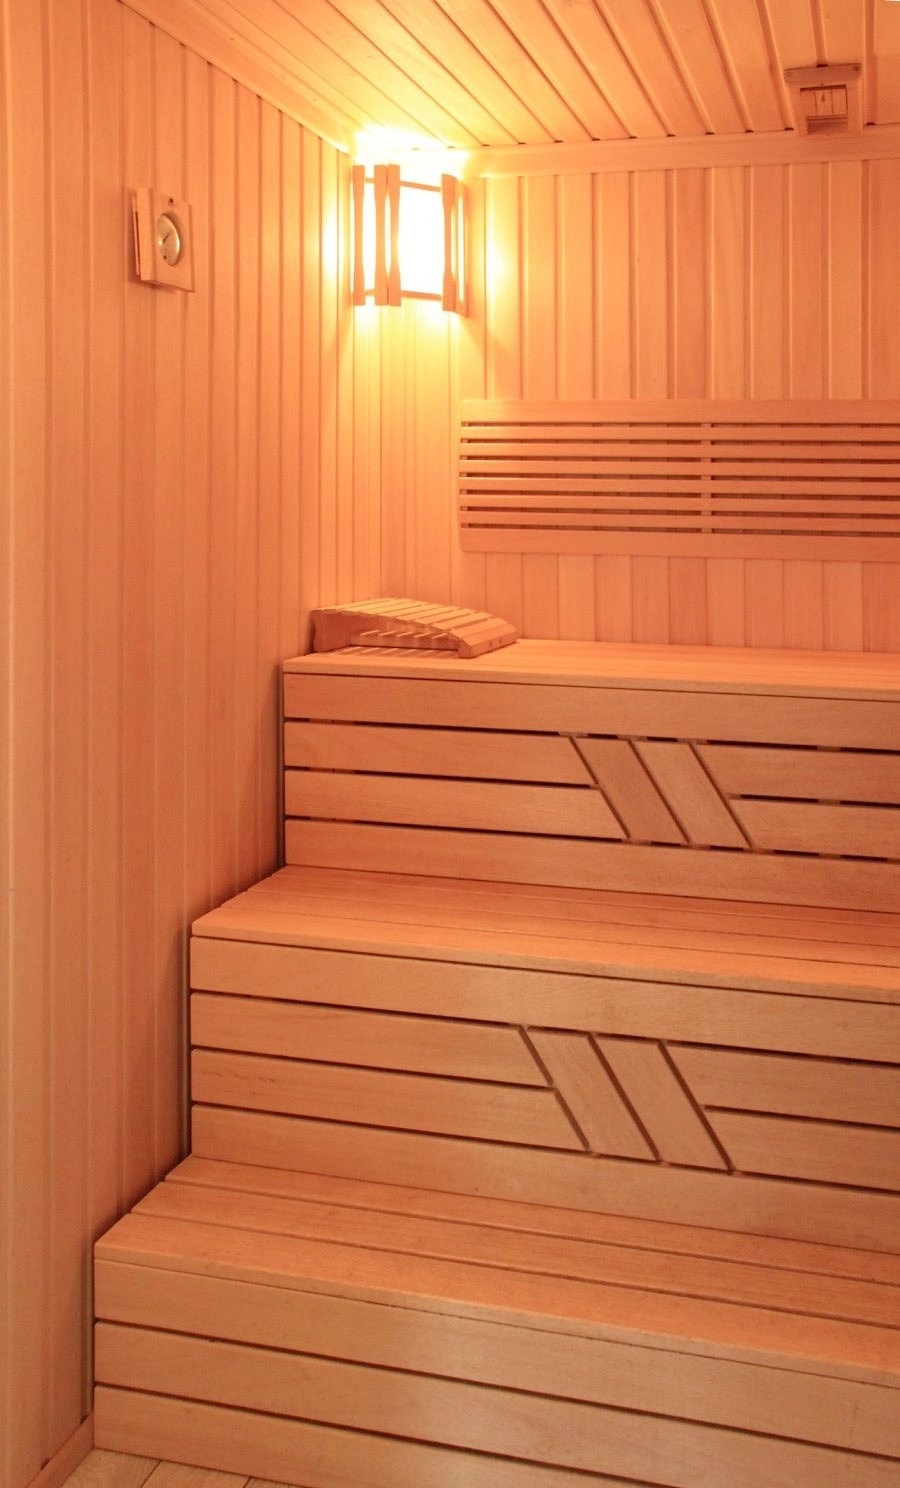 Casa de baños de madera laminada de chapa con terraza "Poseidon" 47 m²